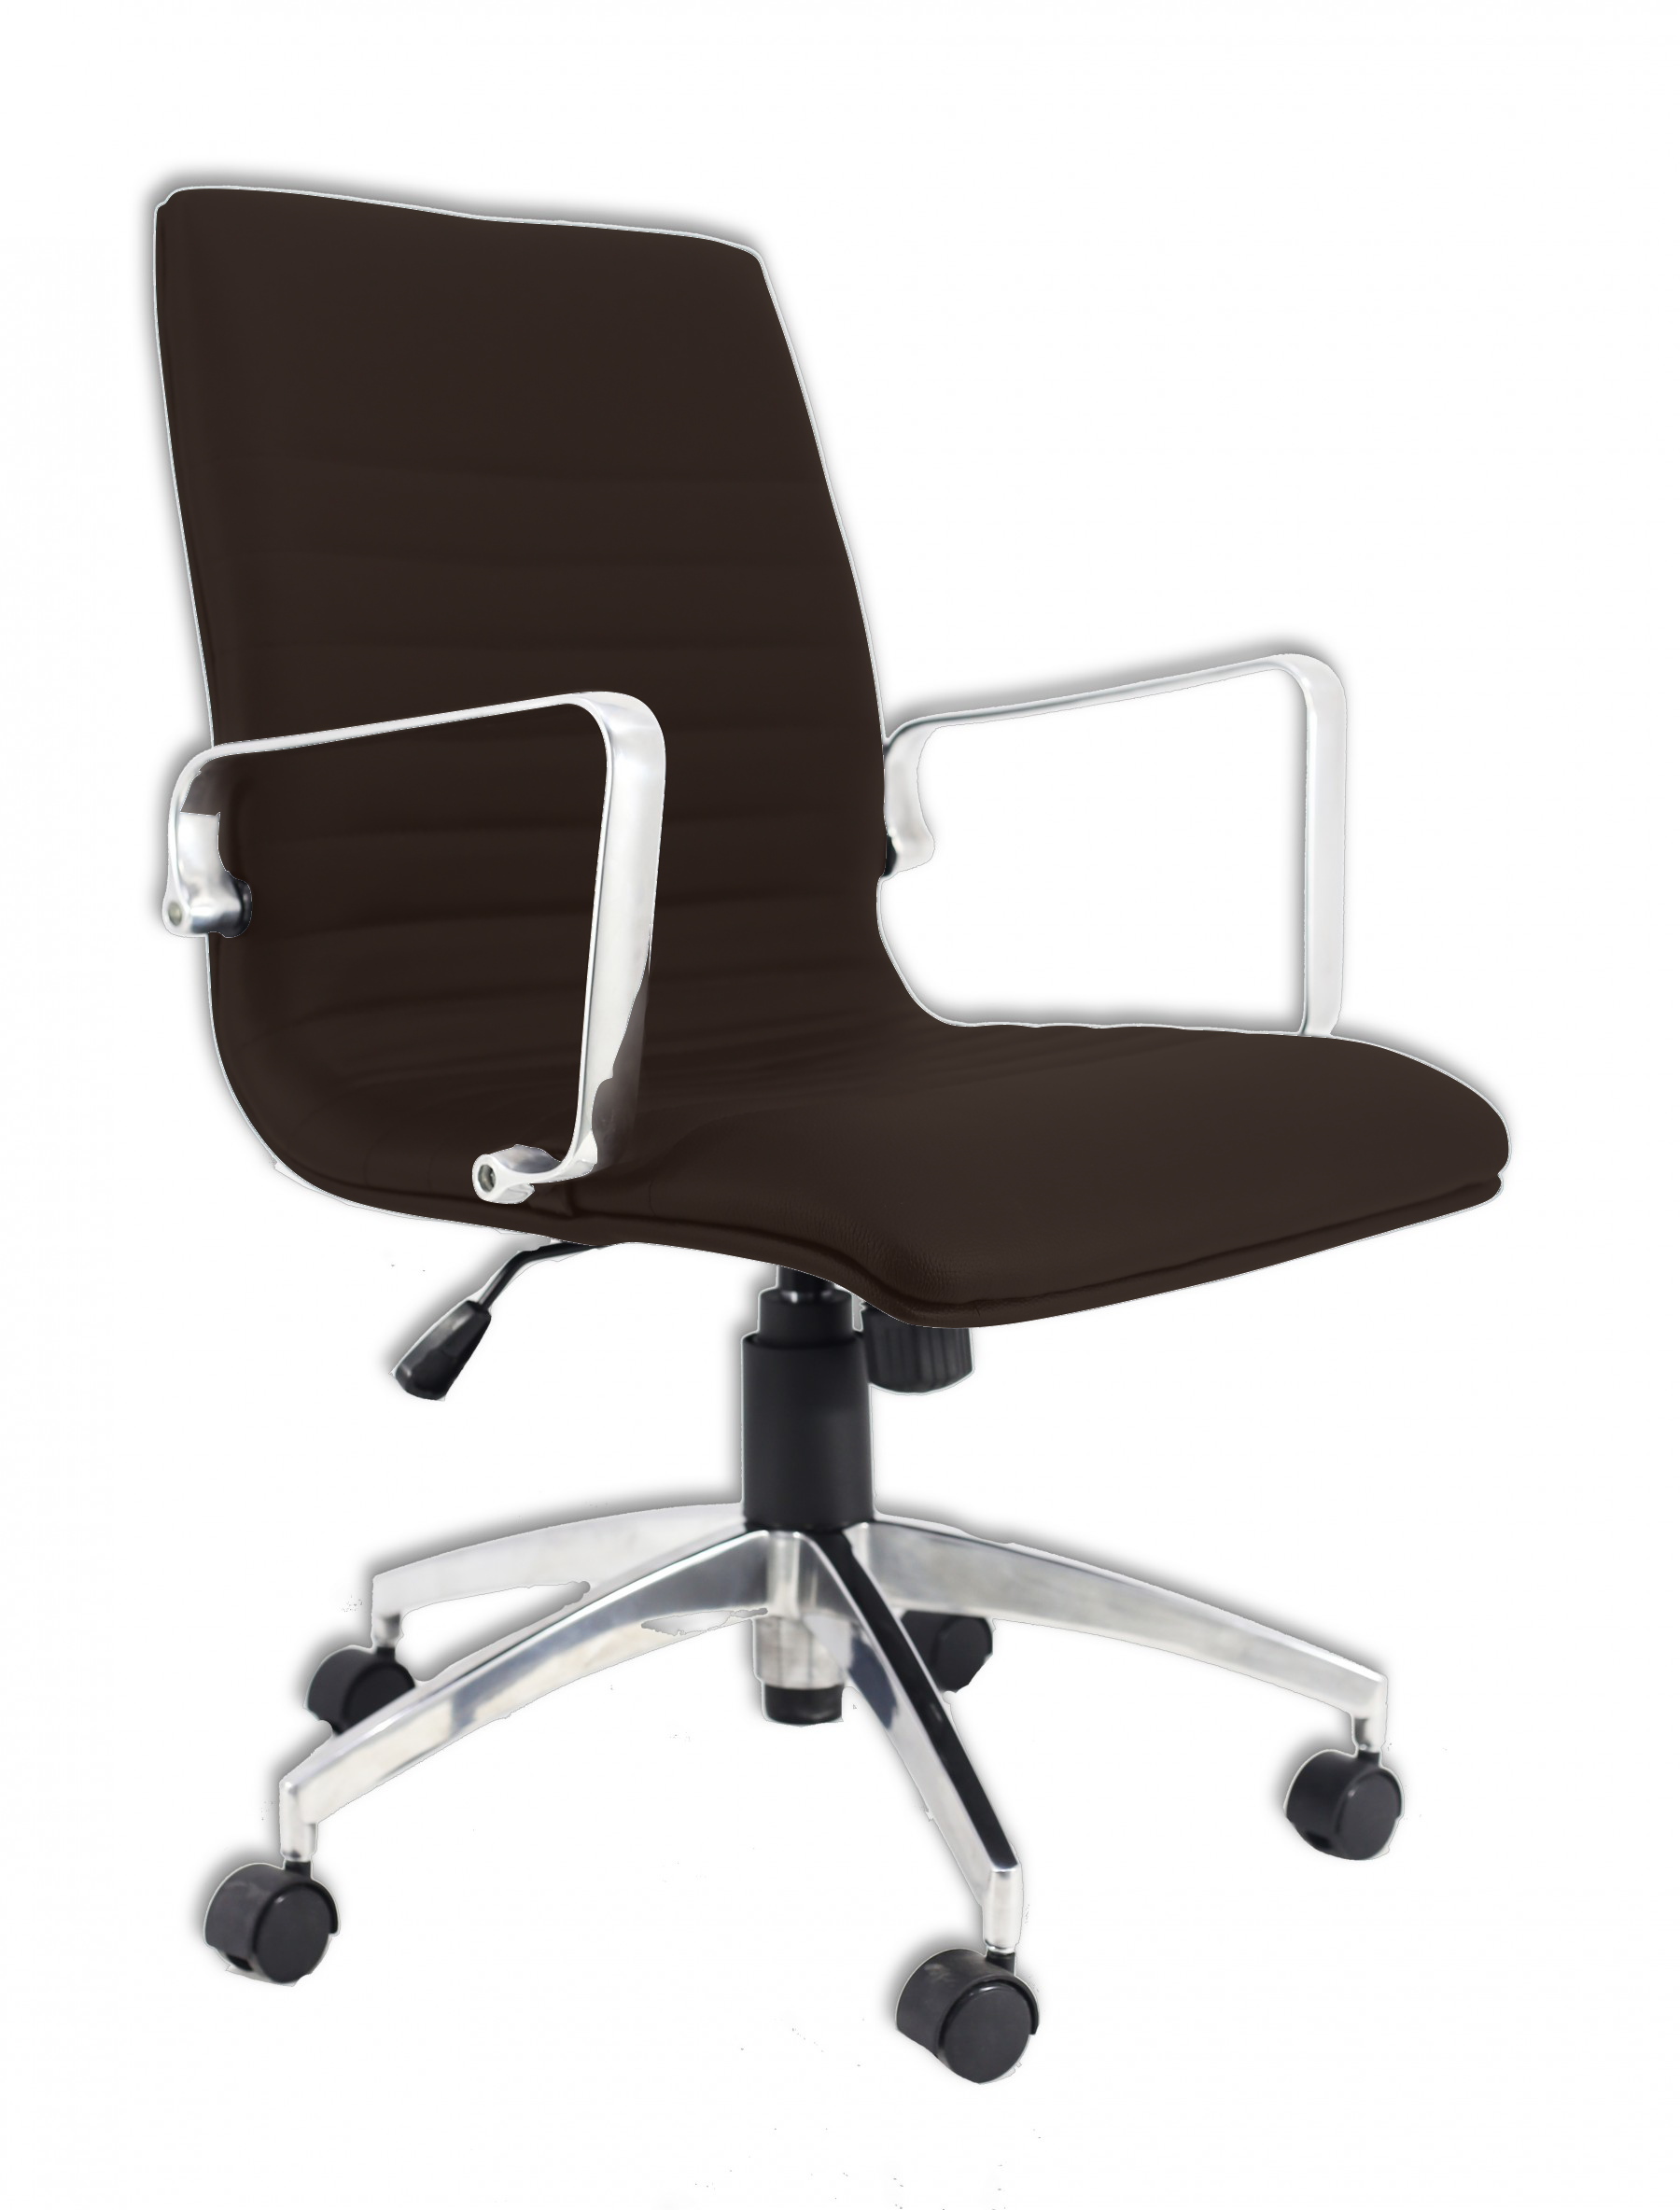 Cadeira Diretor Inspired Eames Office Couro Sintético Marrom